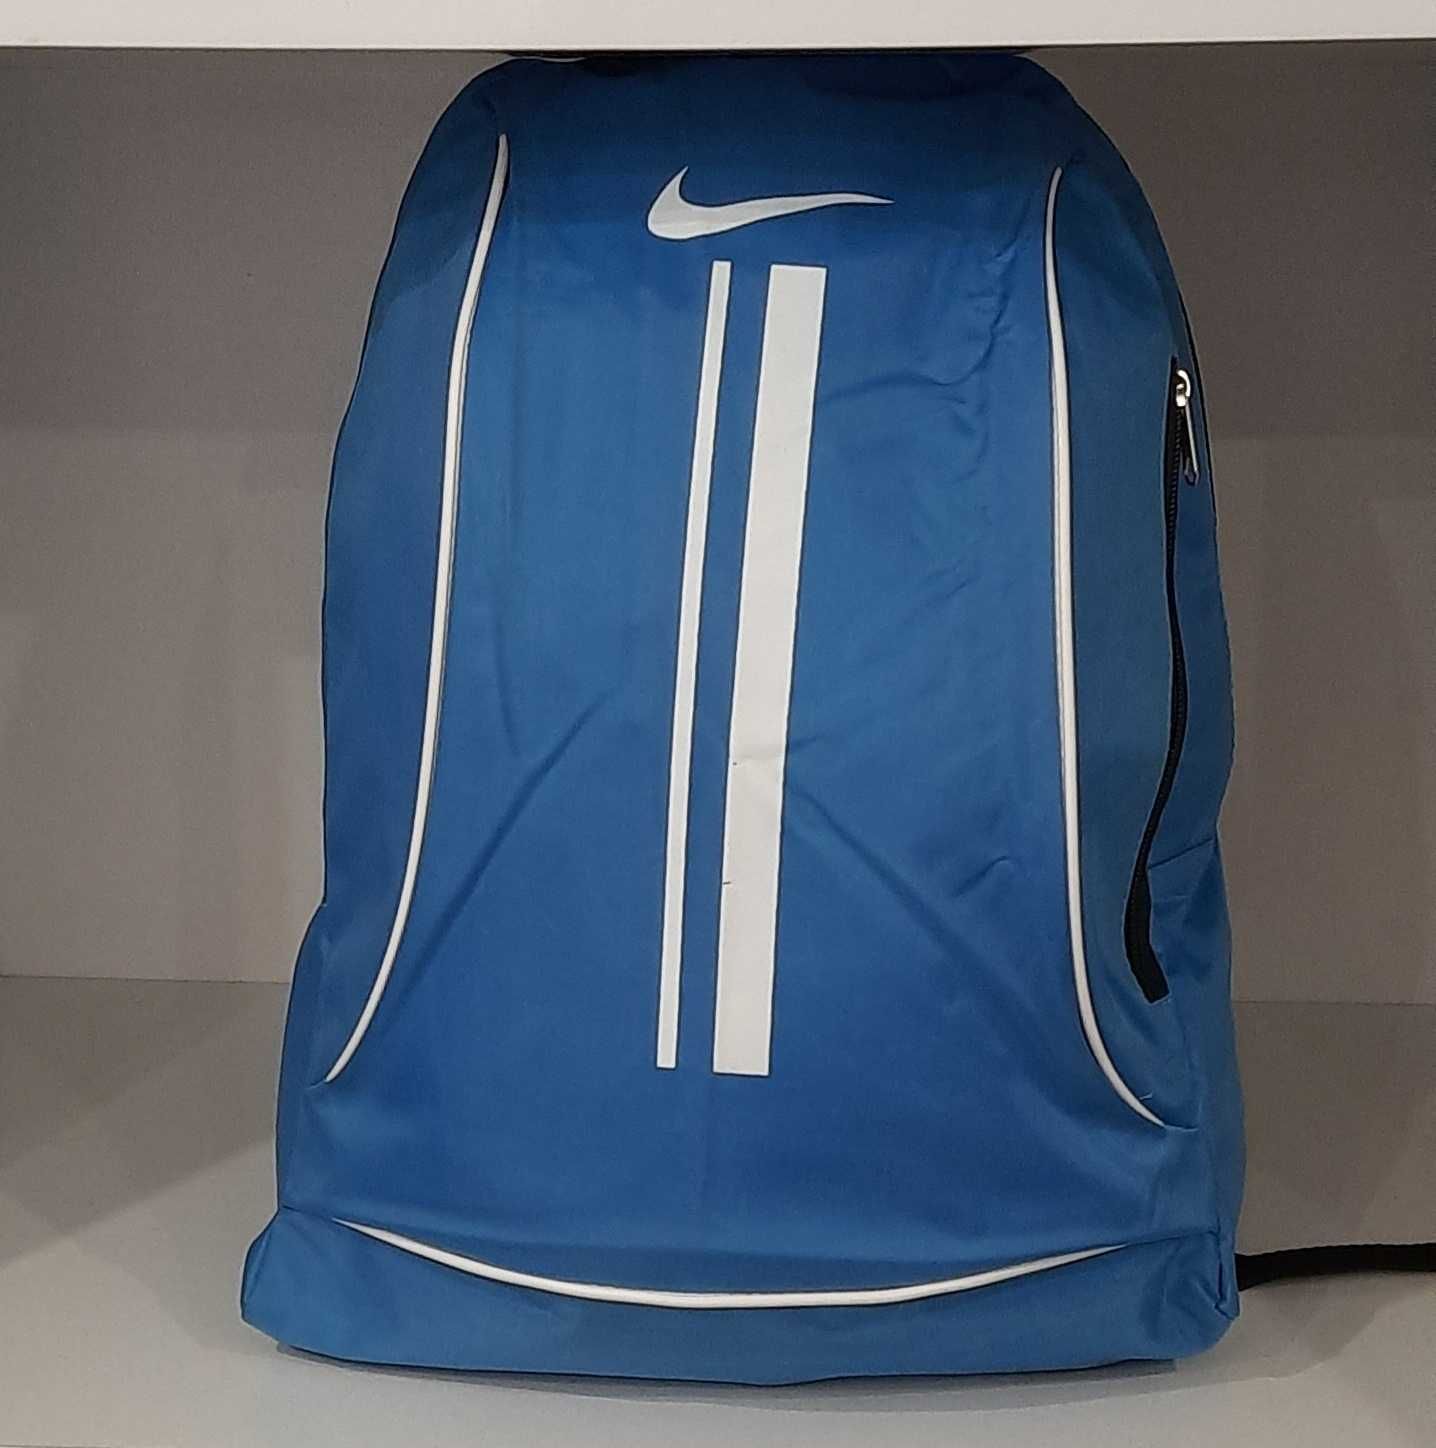 Спортивный городской рюкзак Nike. Новый.